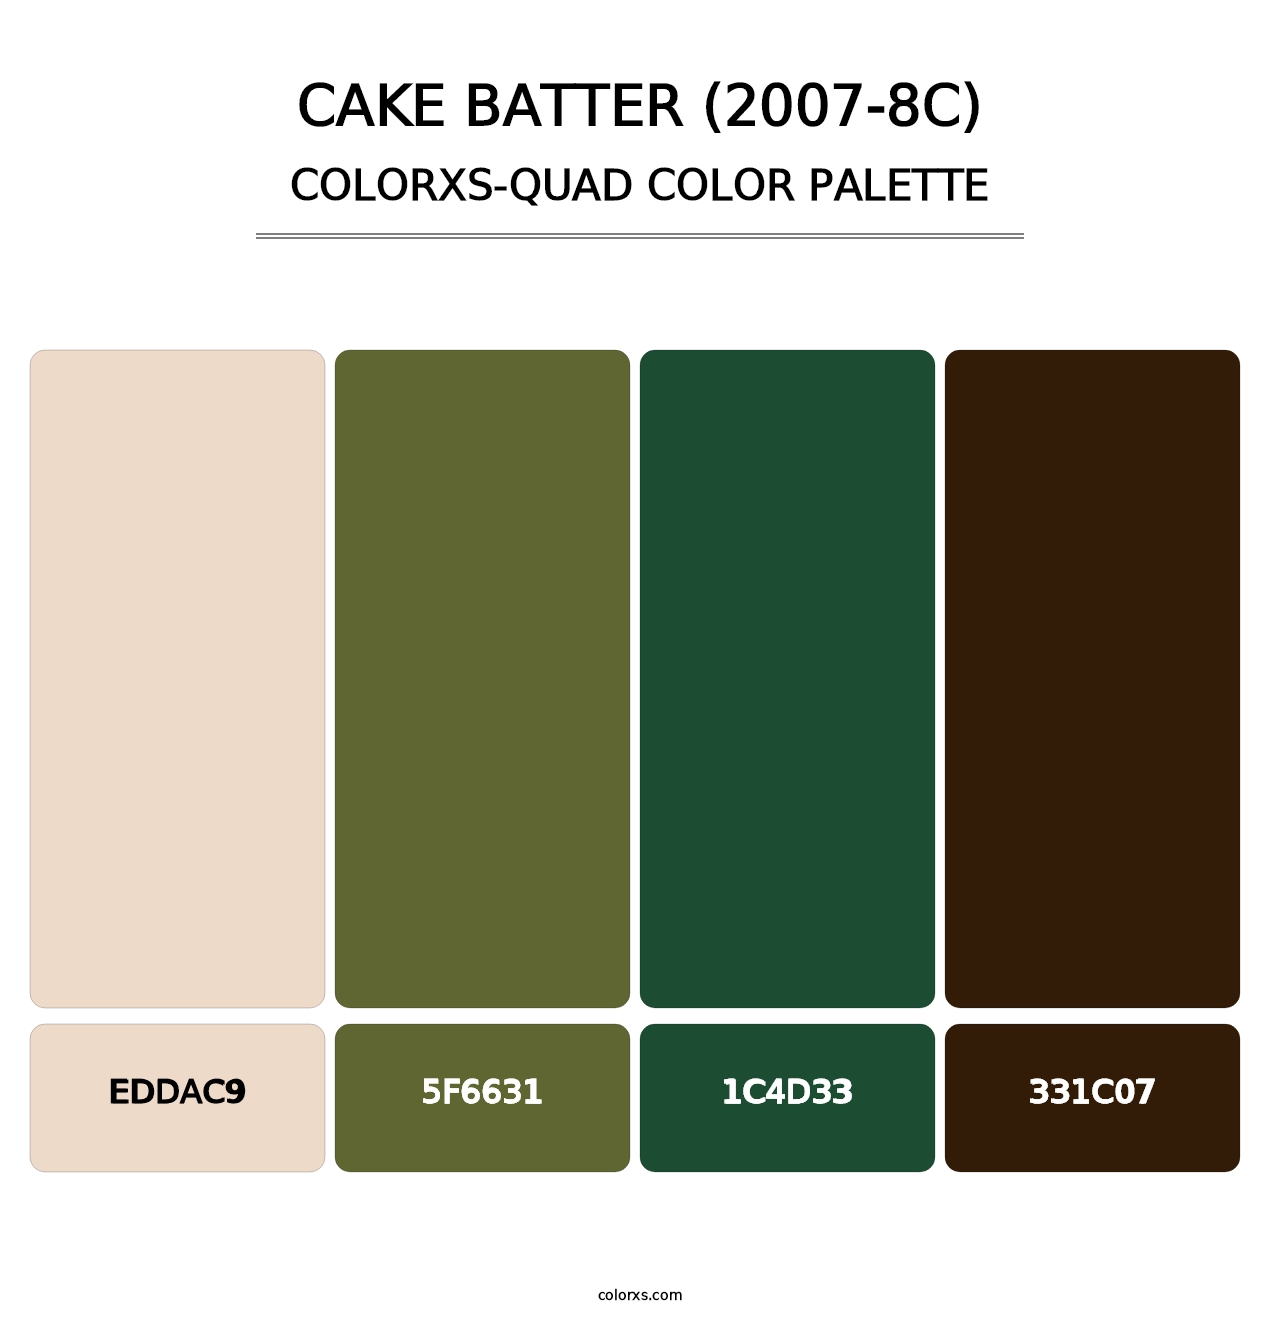 Cake Batter (2007-8C) - Colorxs Quad Palette